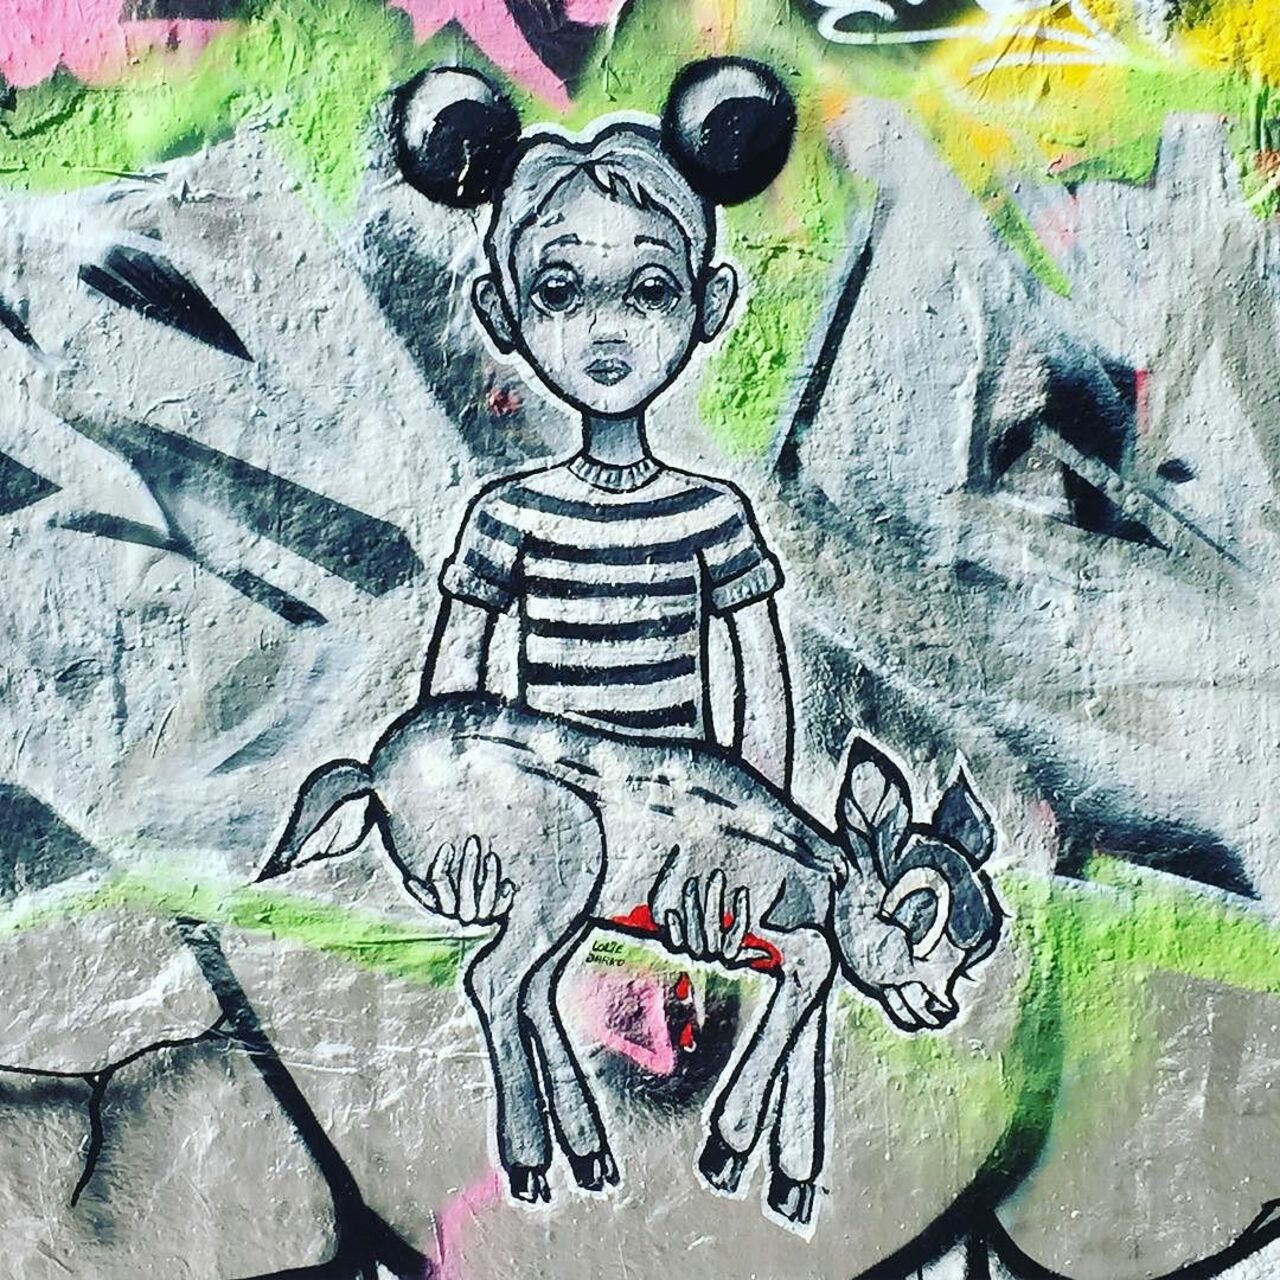 #Paris #graffiti photo by @ijustdontknow http://ift.tt/1LxCcer #StreetArt https://t.co/8wCpUmPiBL